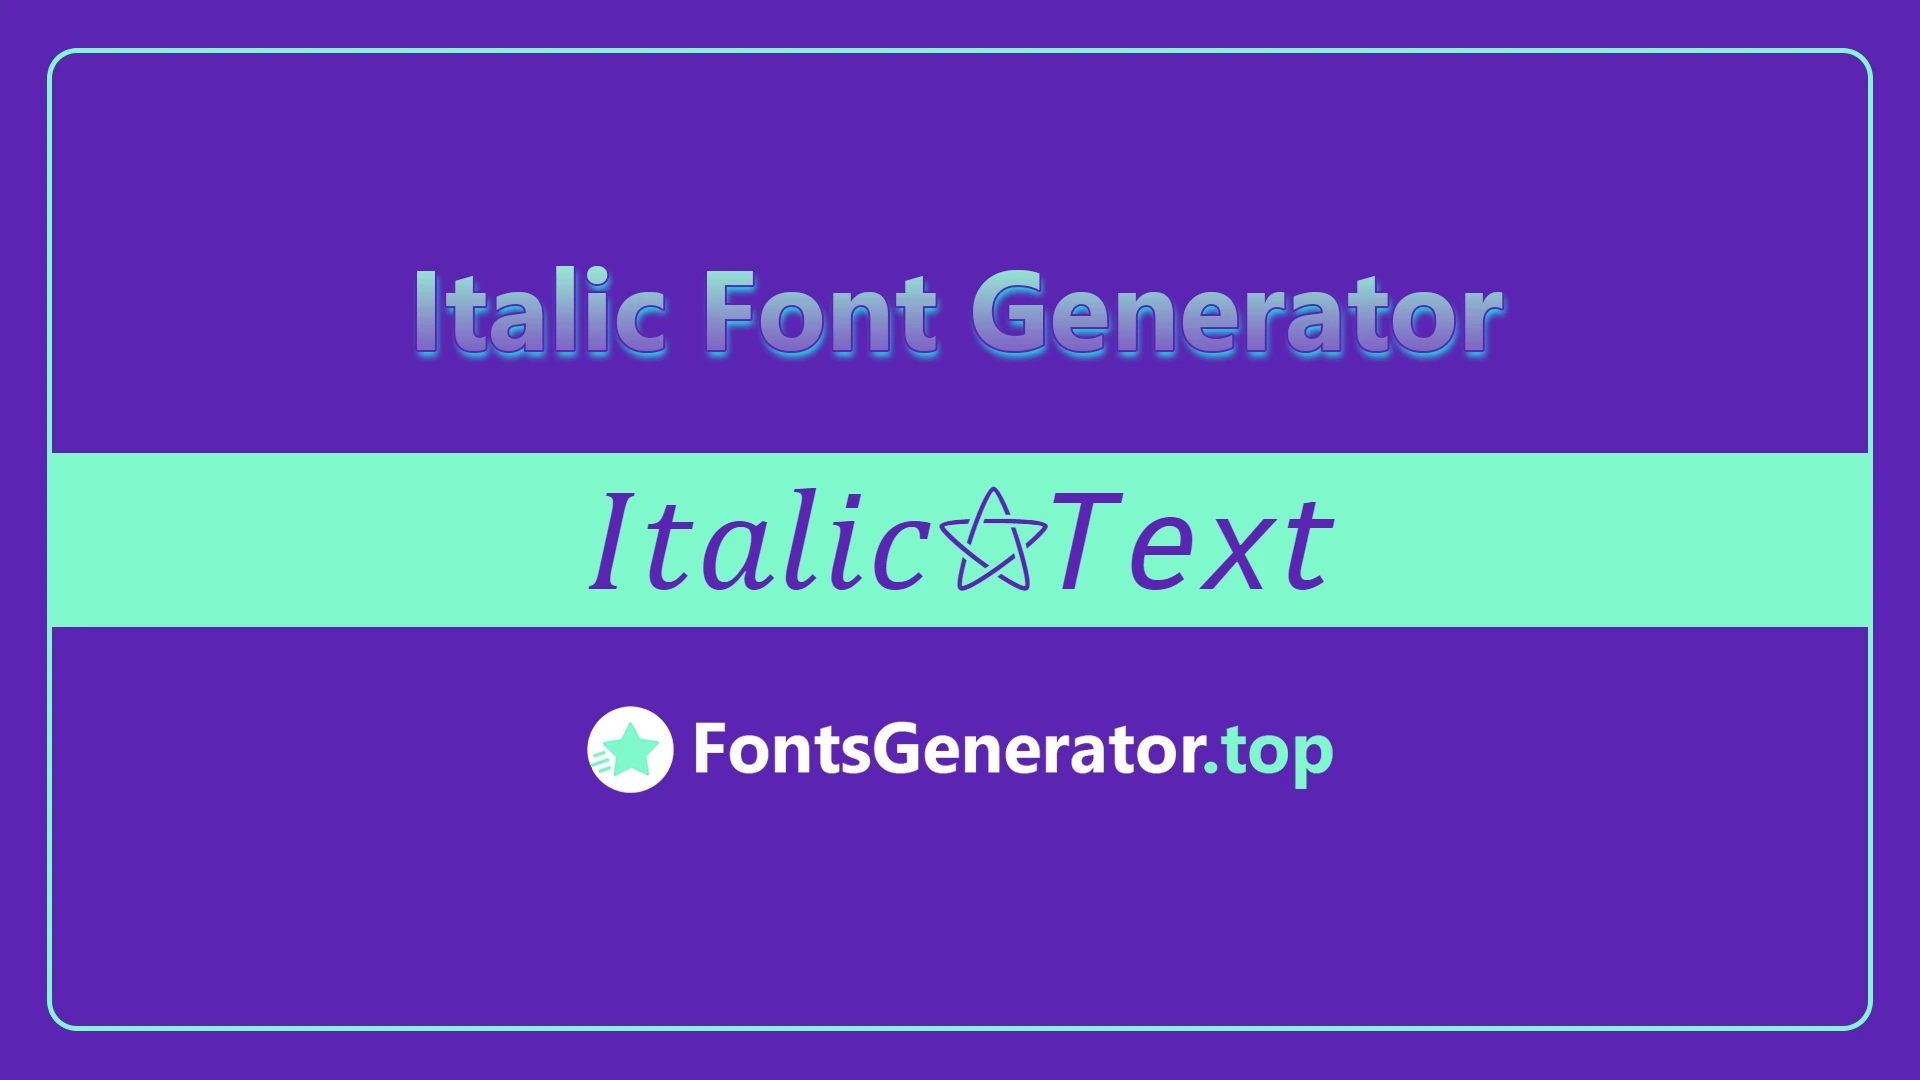 Italic Font Generator